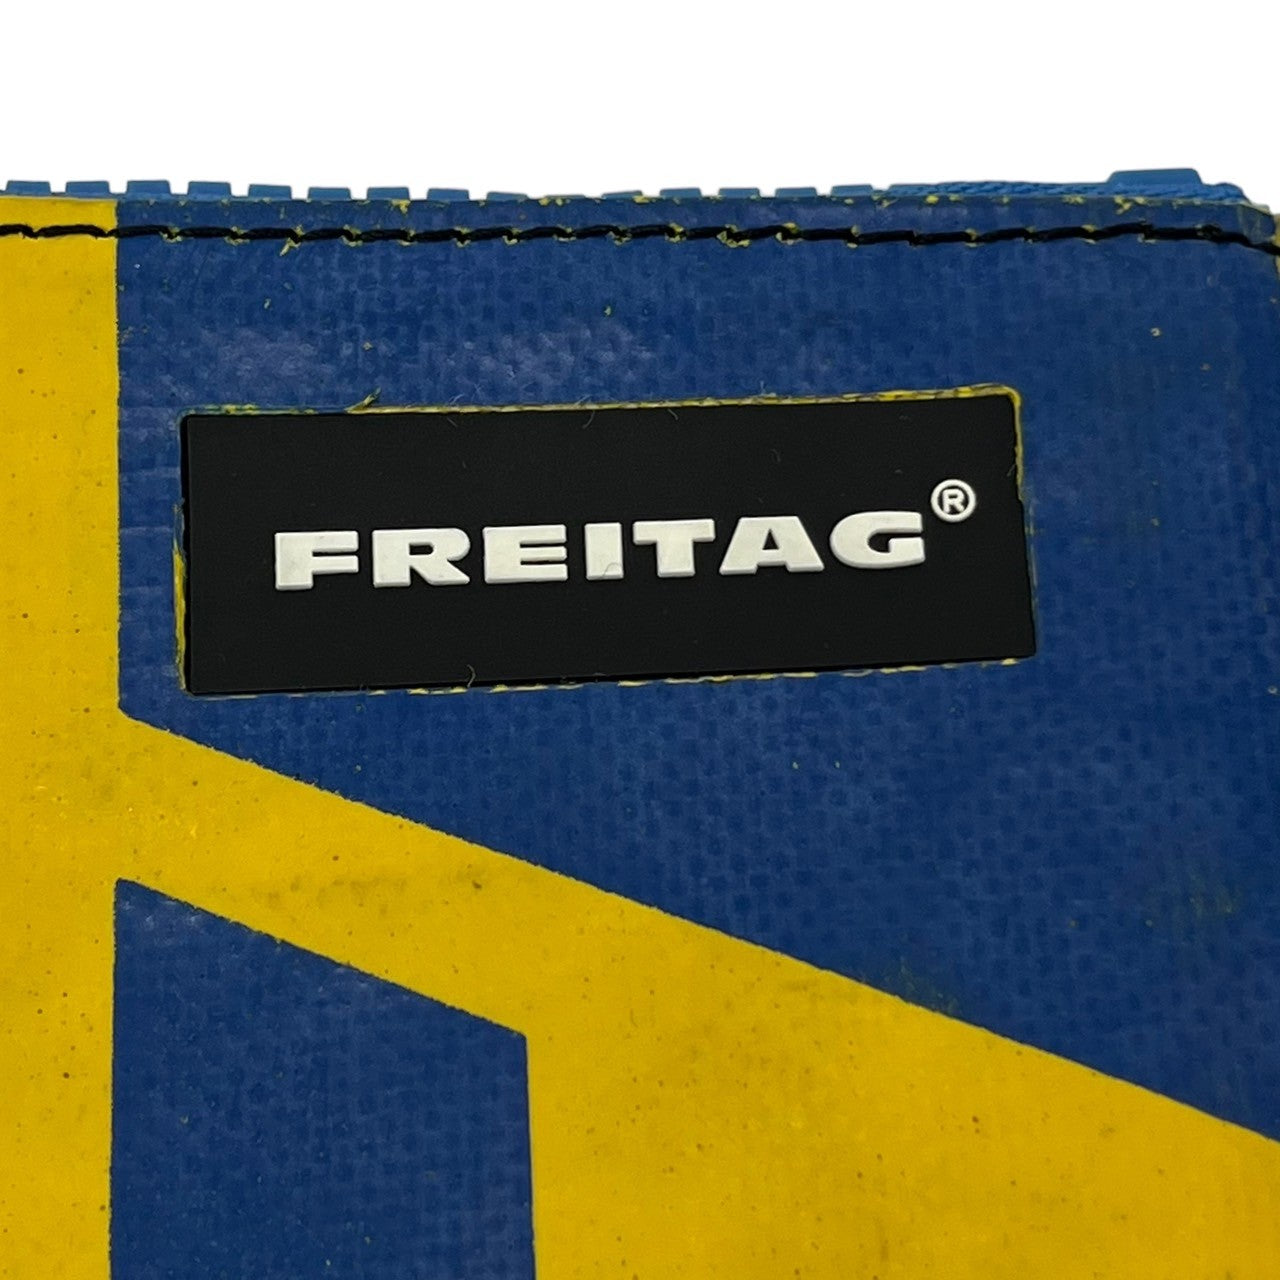 FREITAG(フライターグ) F08 DAN クラッチ バッグ PC ケース ポーチ ジップ ブルー×イエロー